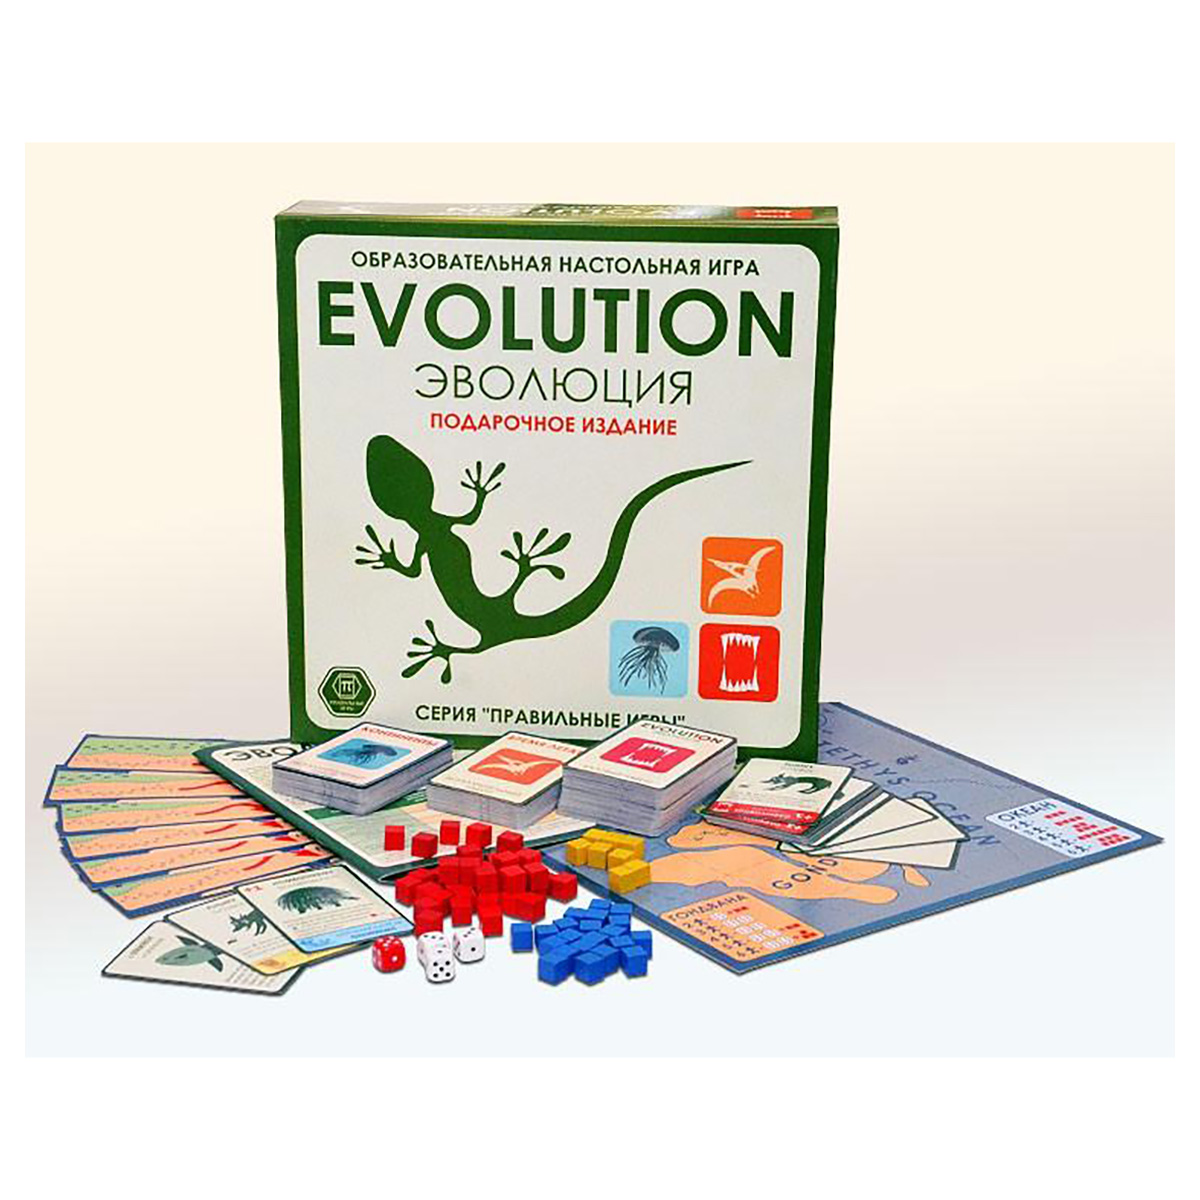 Новая игра эволюция. 3-01-04 Эволюция. Подарочный набор (базовый+2 дополнения). Настольная игра правильные игры Эволюция.